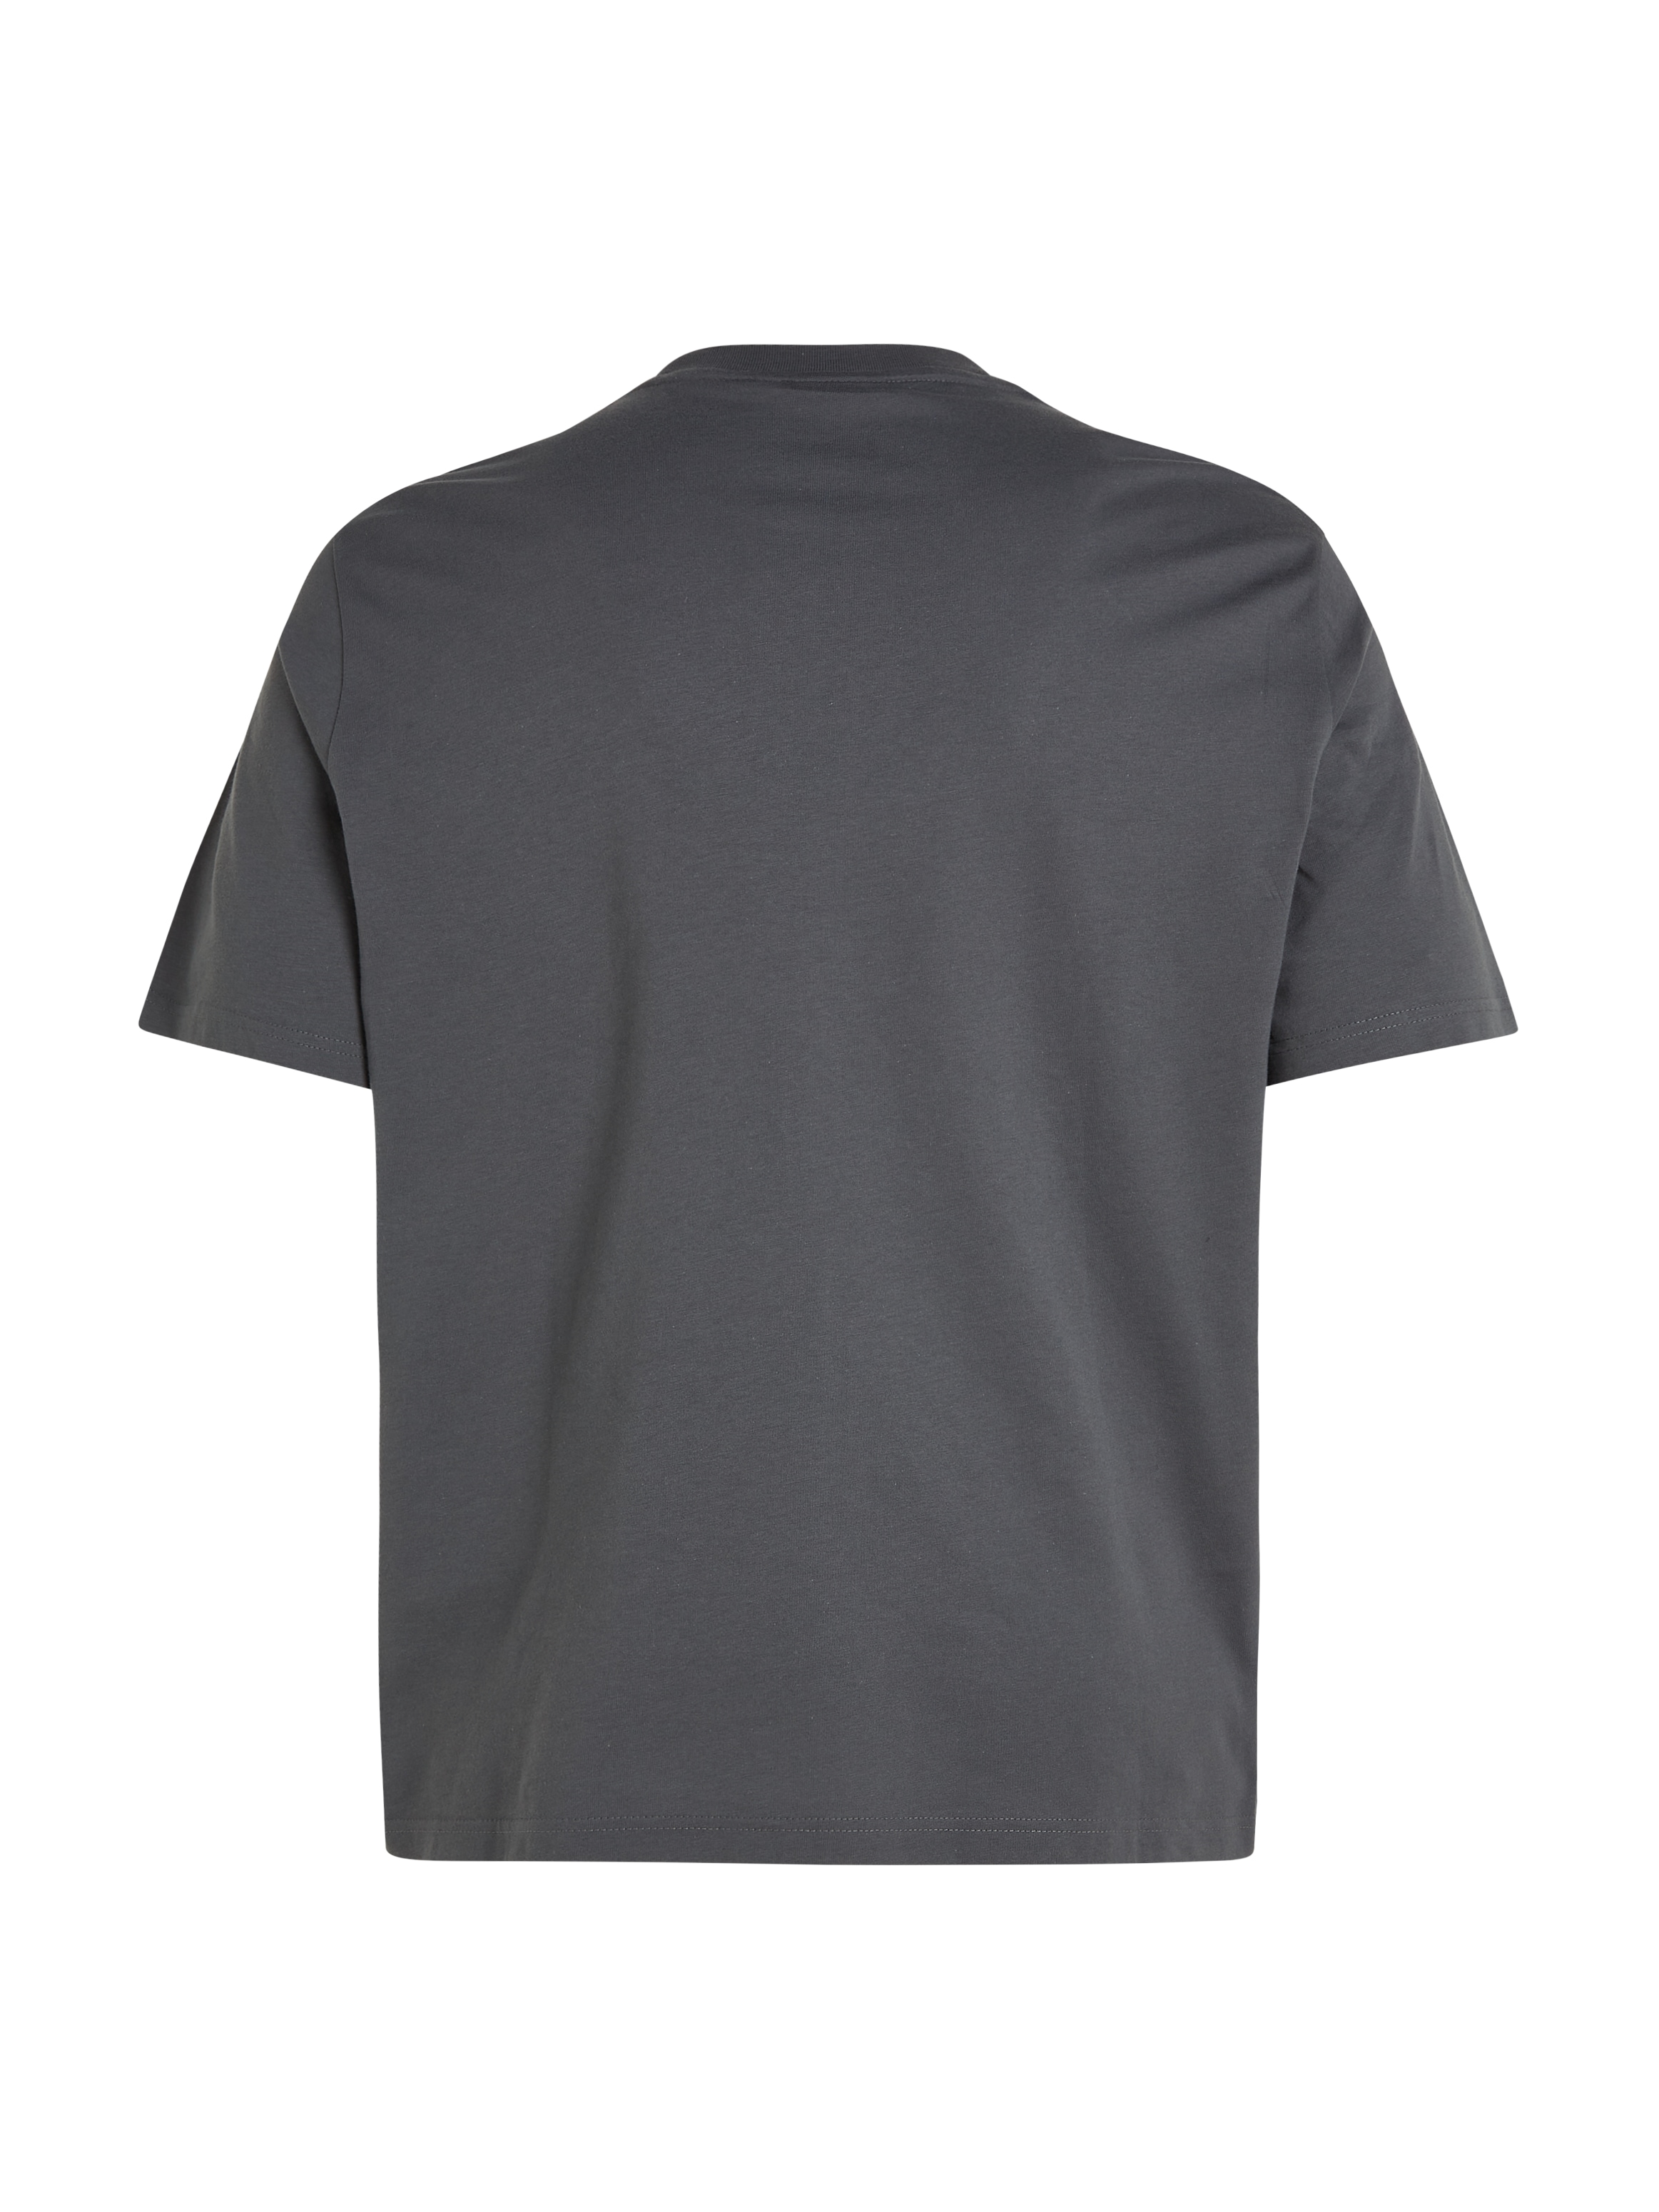 Calvin Klein Big&Tall T-Shirt »BT_OFF PLACEMENT LOGO T-SHIRT«, in großen Größen mit Markenlabel